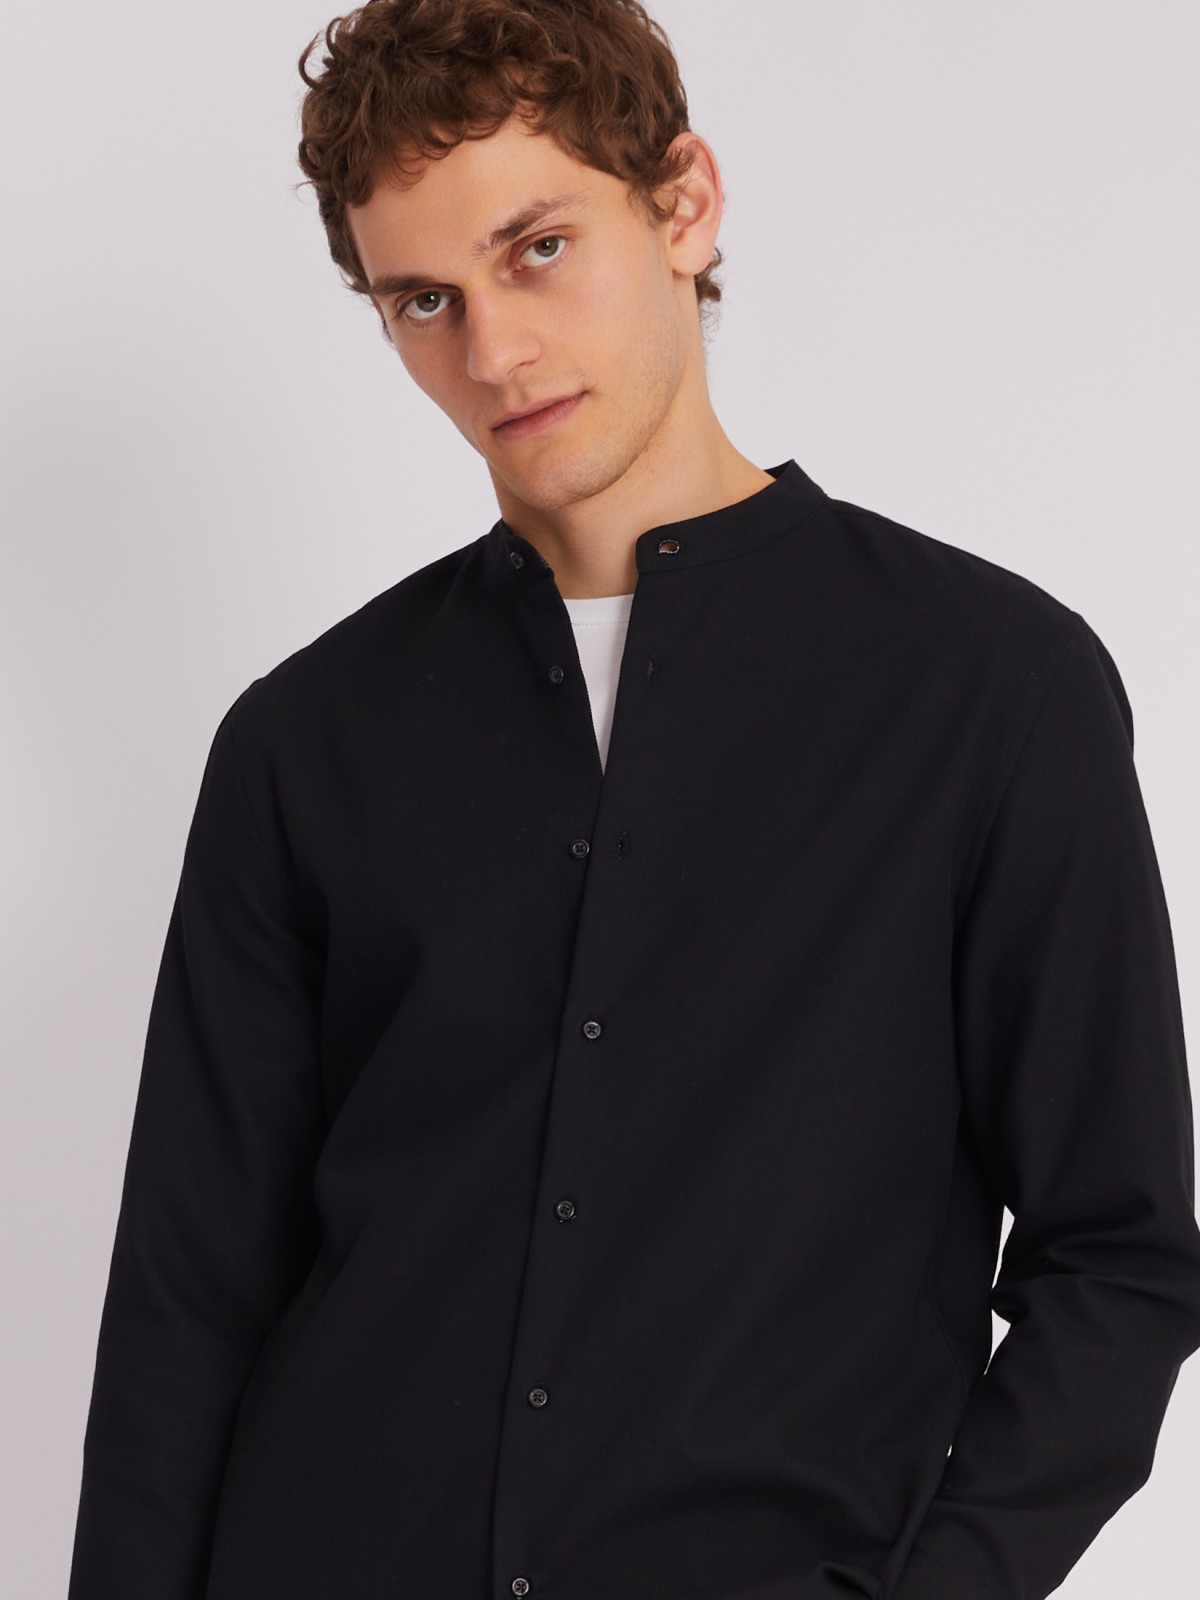 Офисная рубашка с воротником-стойкой и длинным рукавом zolla 013312159023, цвет черный, размер S - фото 4